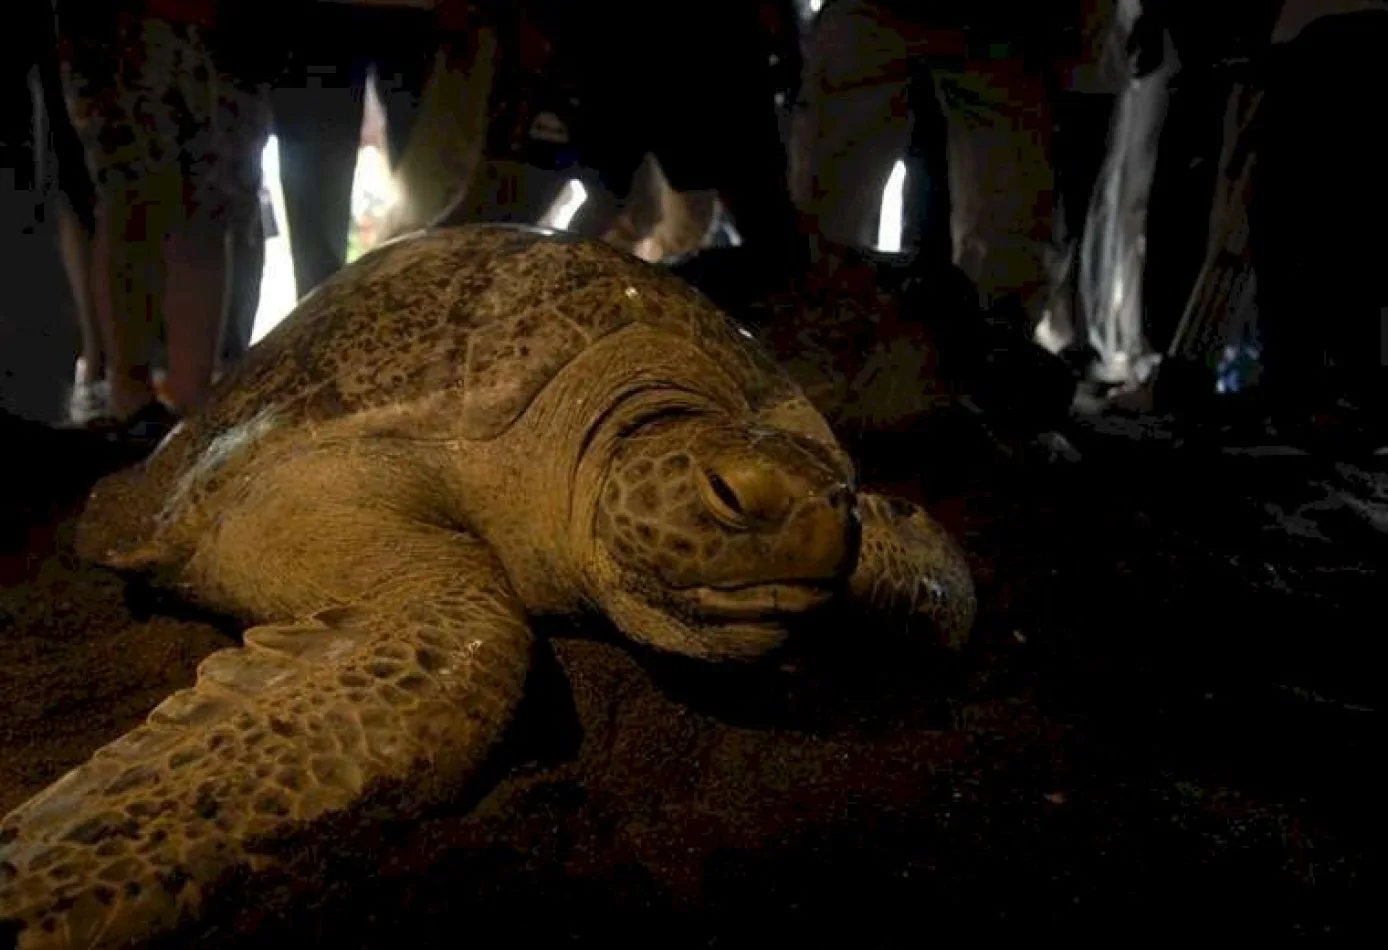 Aparecieron decenas de tortugas marinas muertas a cuchillazos en Japón